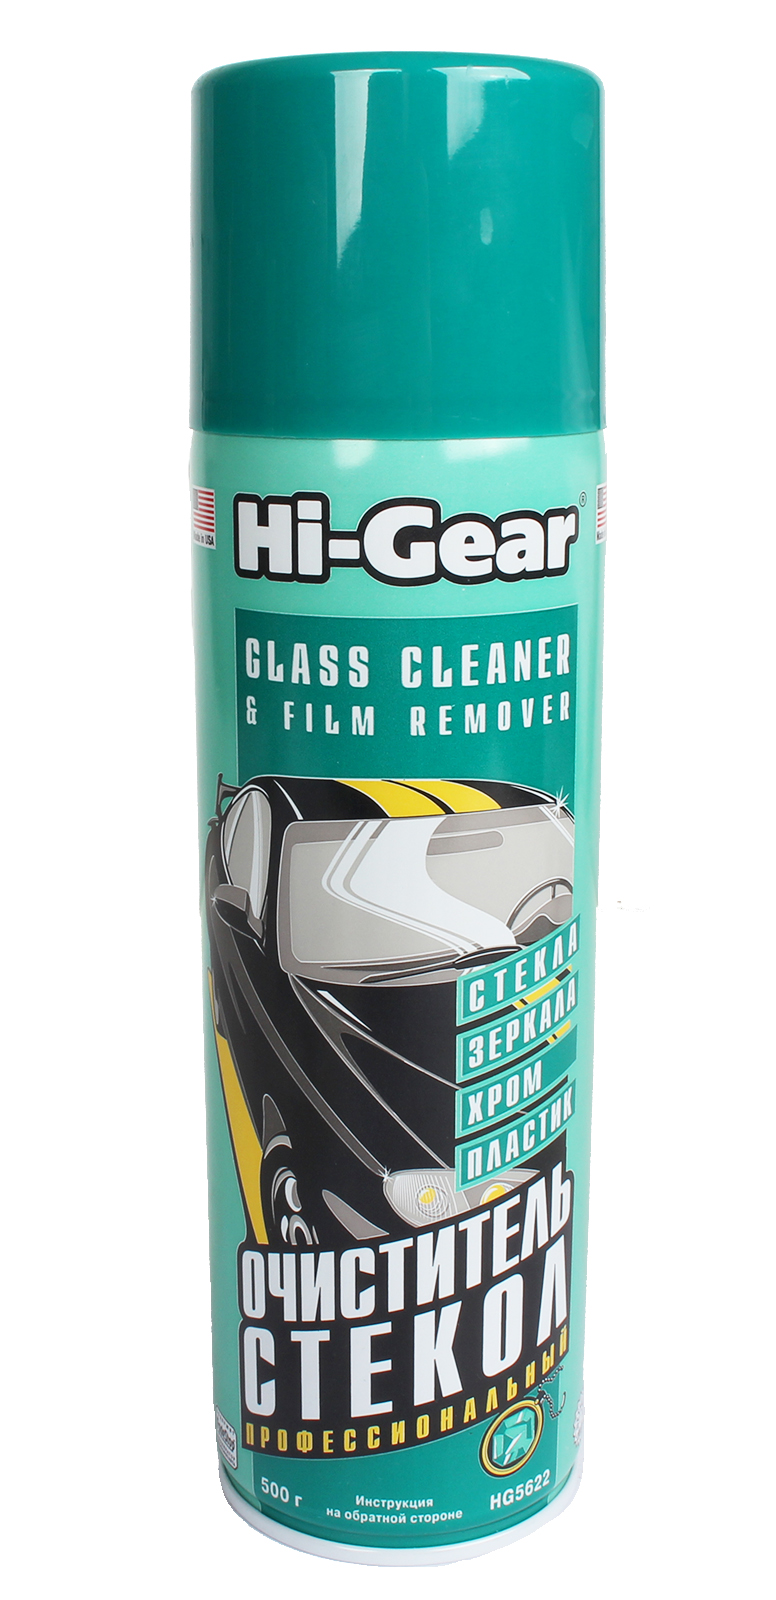 Очиститель Hi-Gear стекол 500г фотография №1